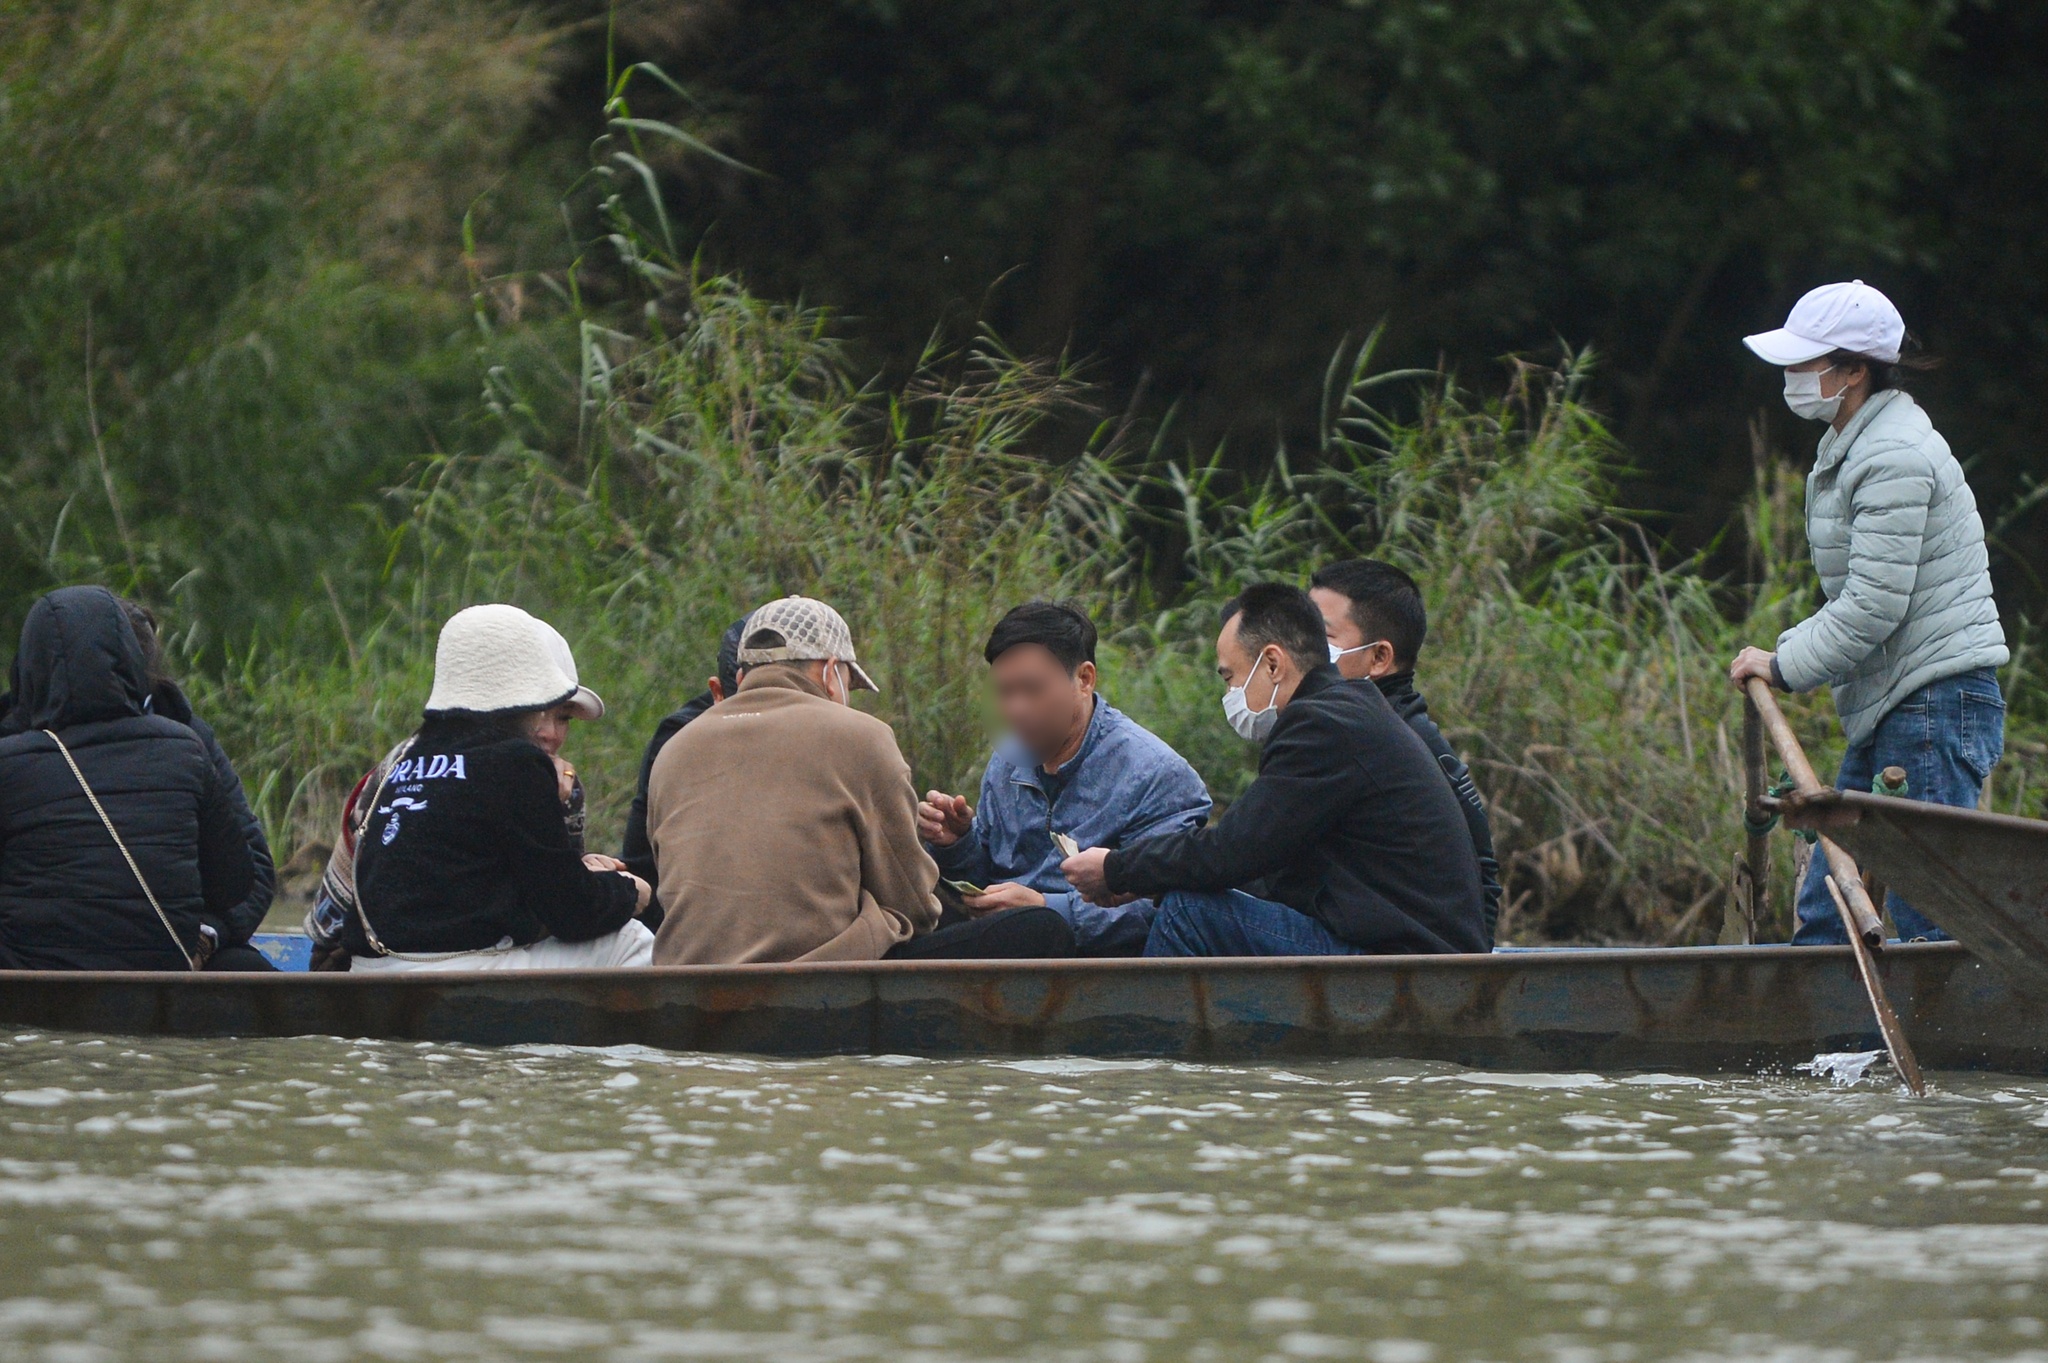 Du khách đánh bạc trên thuyền ở chùa Hương, ban quản lý 'than' khó - ảnh 2